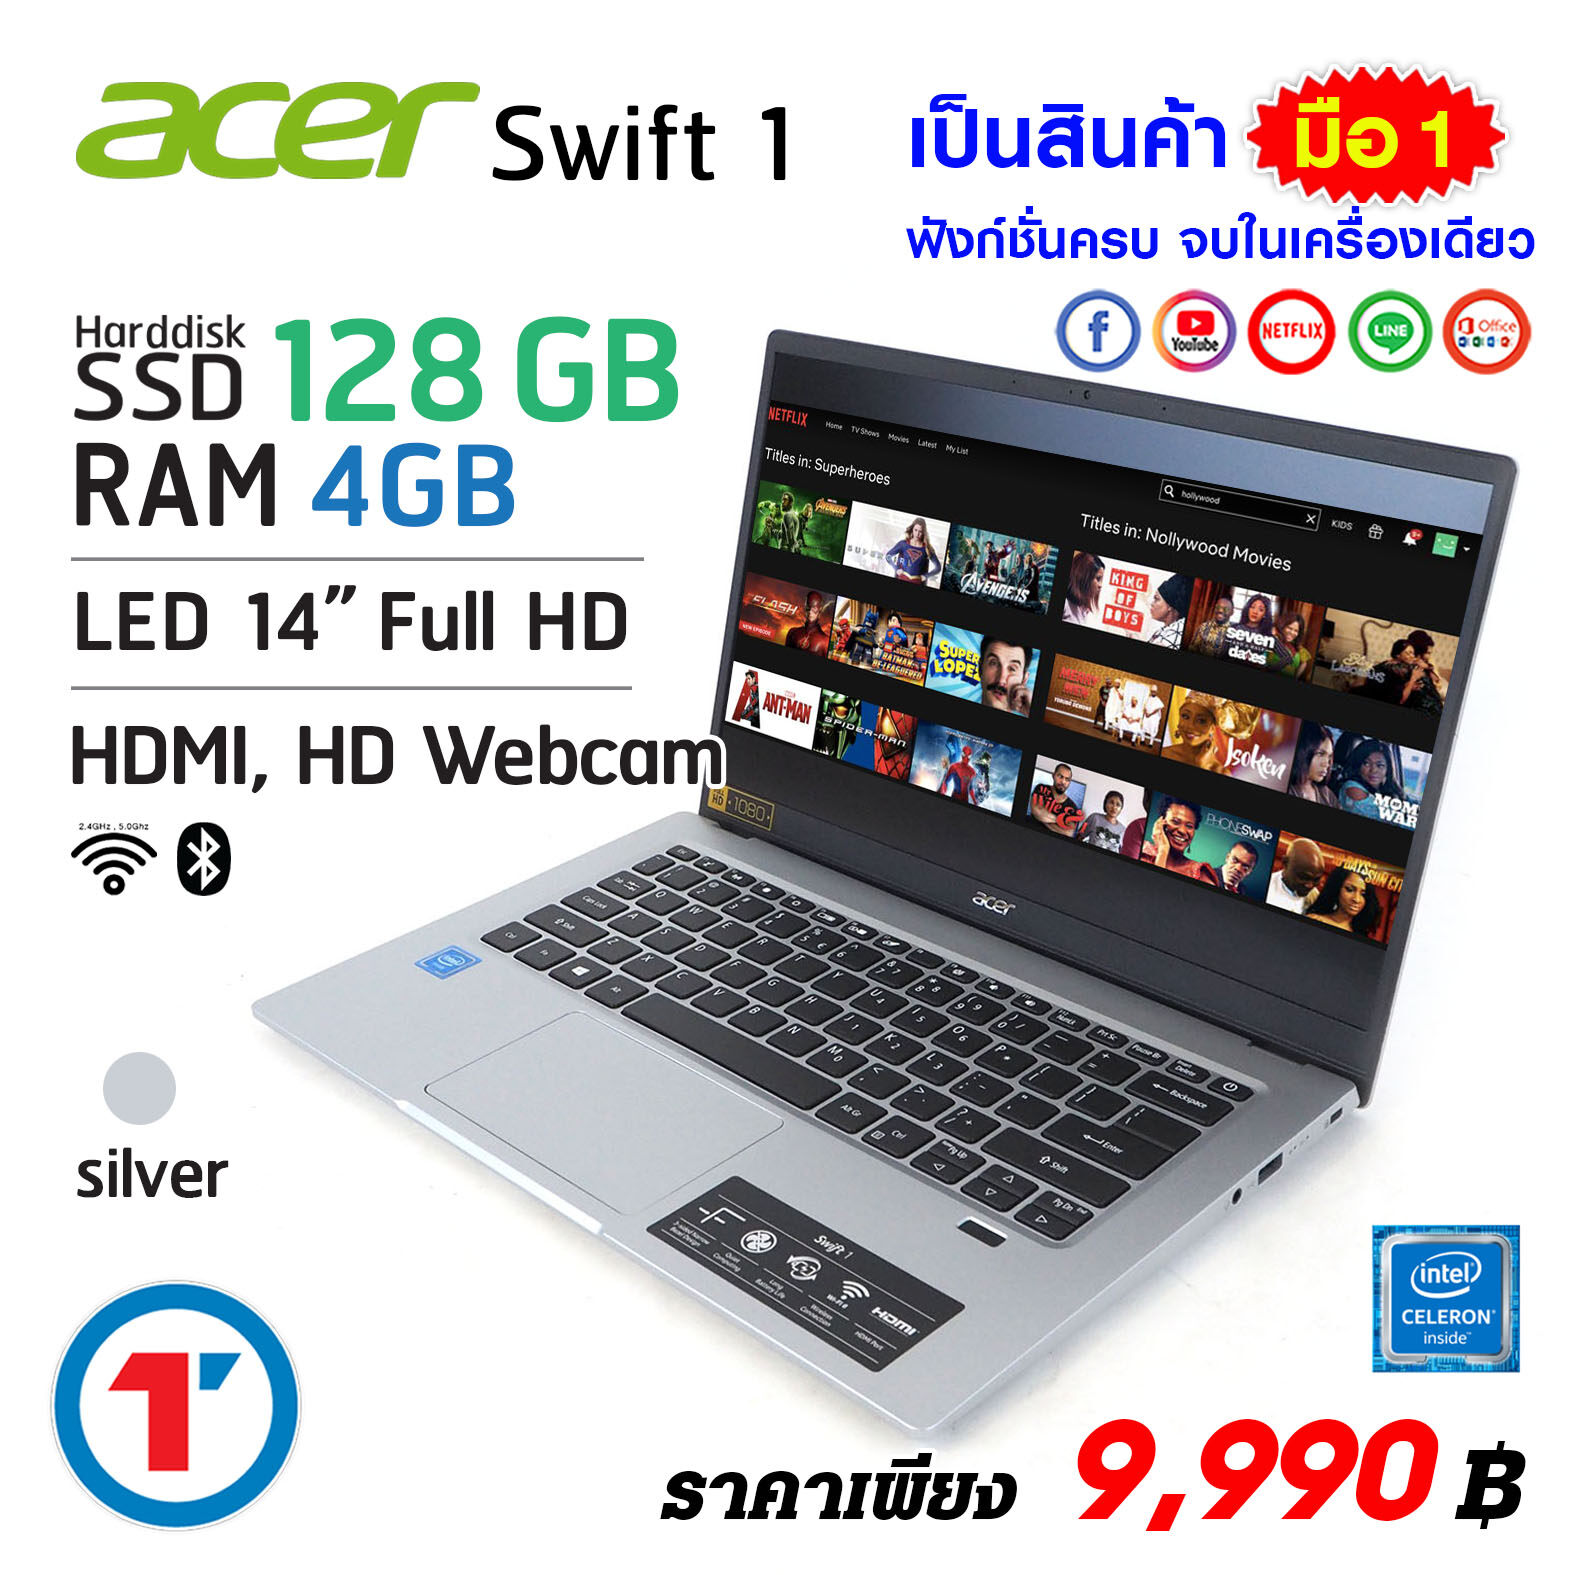 โน๊ตบุ๊ค Acer Swift หน้าจอ 14 นิ้ว RAM 4 SSD 128 GB Wifi 6 + Bluetooth 4.2  New laptop notebook computer 2021 ส่งฟรี มีประกันและบริการหลังการขาย By Totalsolution